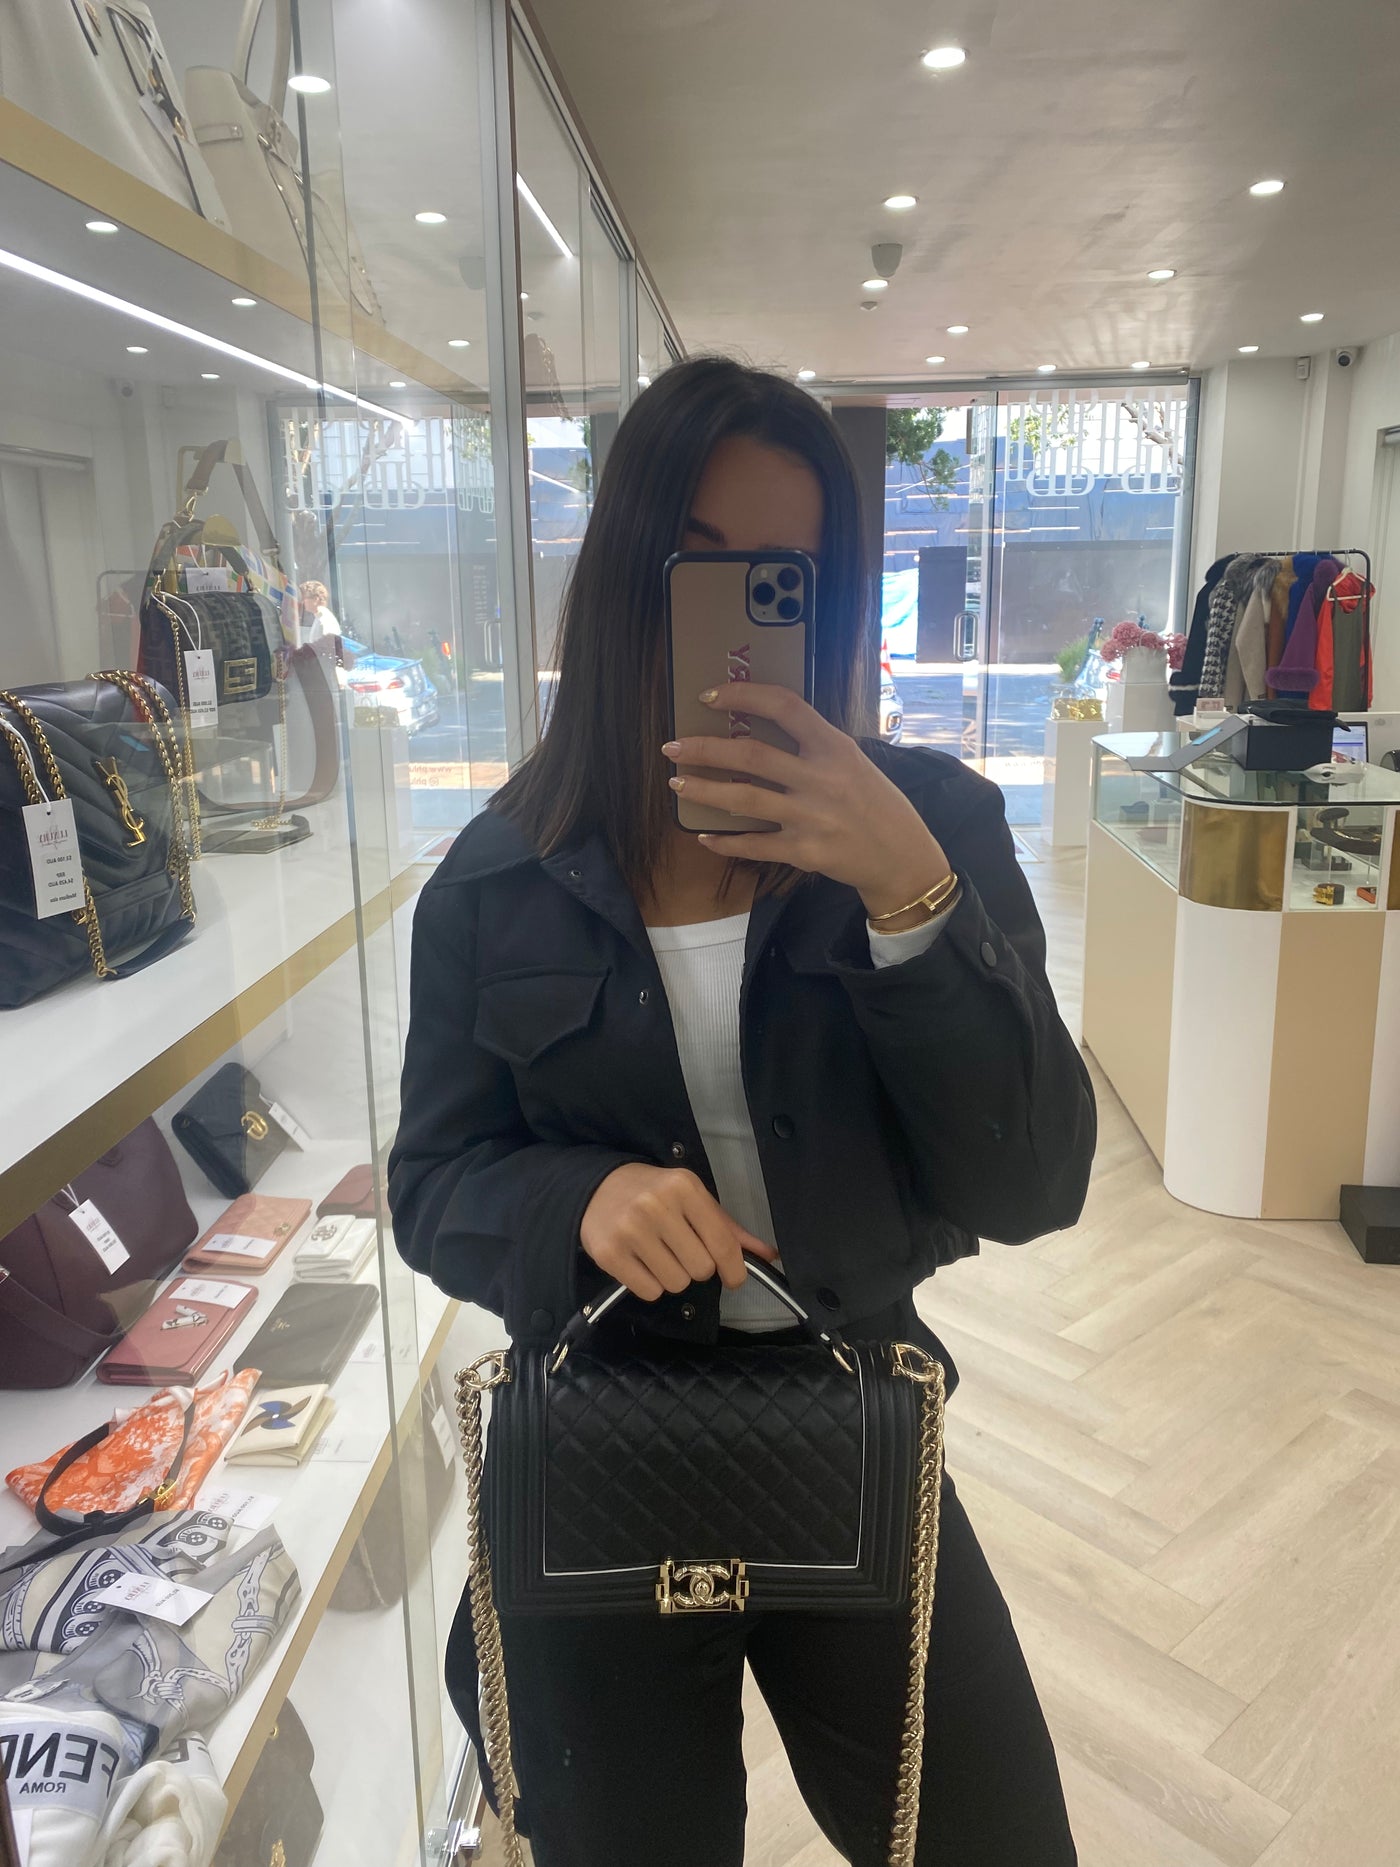 Chanel Medium Boy Bag Black CGHW